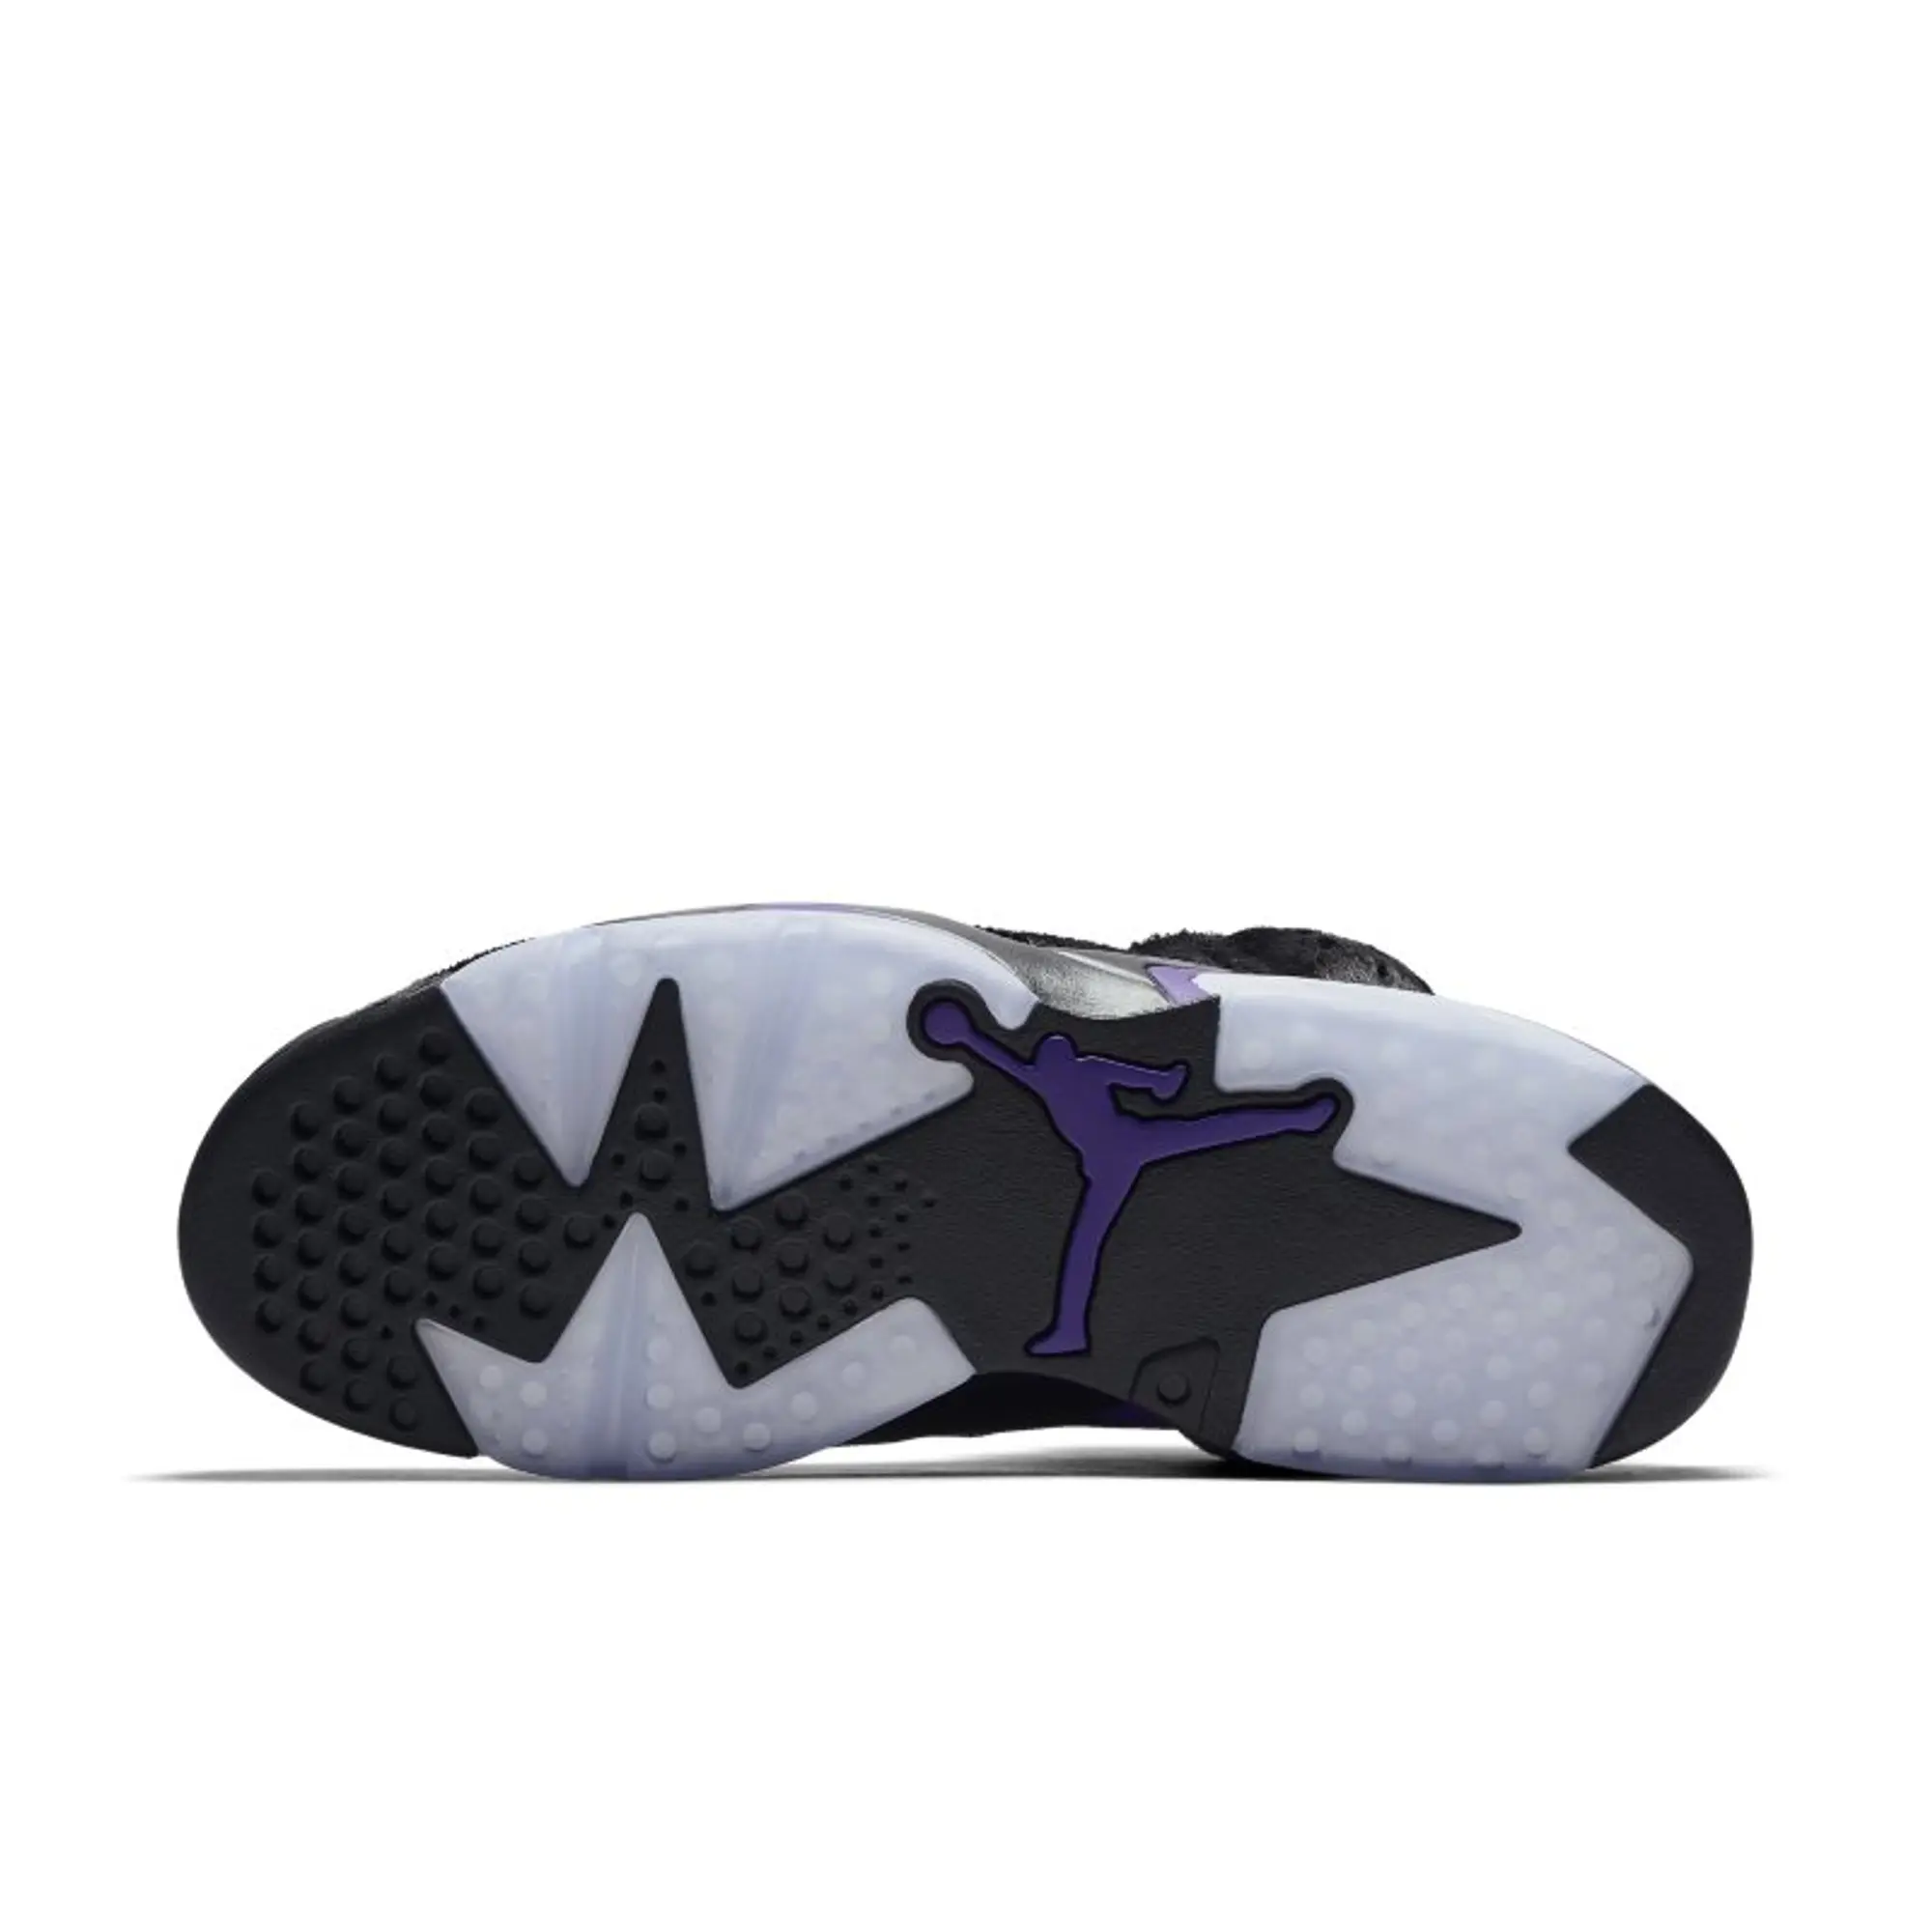 Nike Air Jordan 6 Retro Men's Shoe - Black